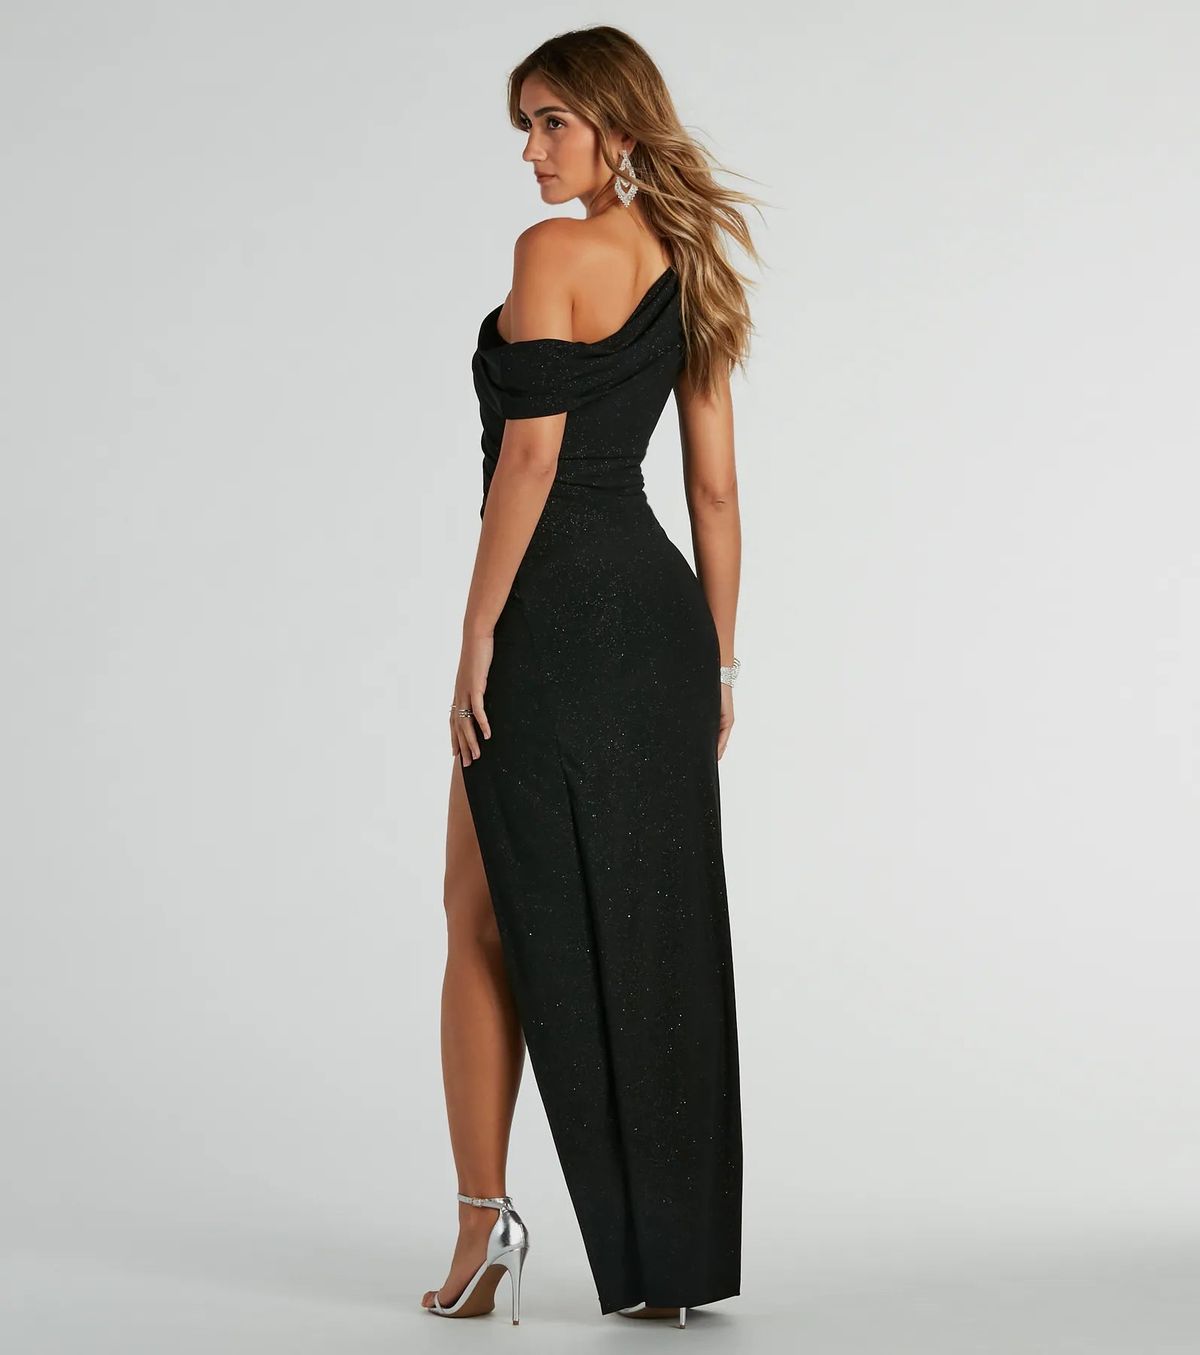 Style 05002-8214 Windsor Size L Bridesmaid One Shoulder Black Side Slit Dress on Queenly